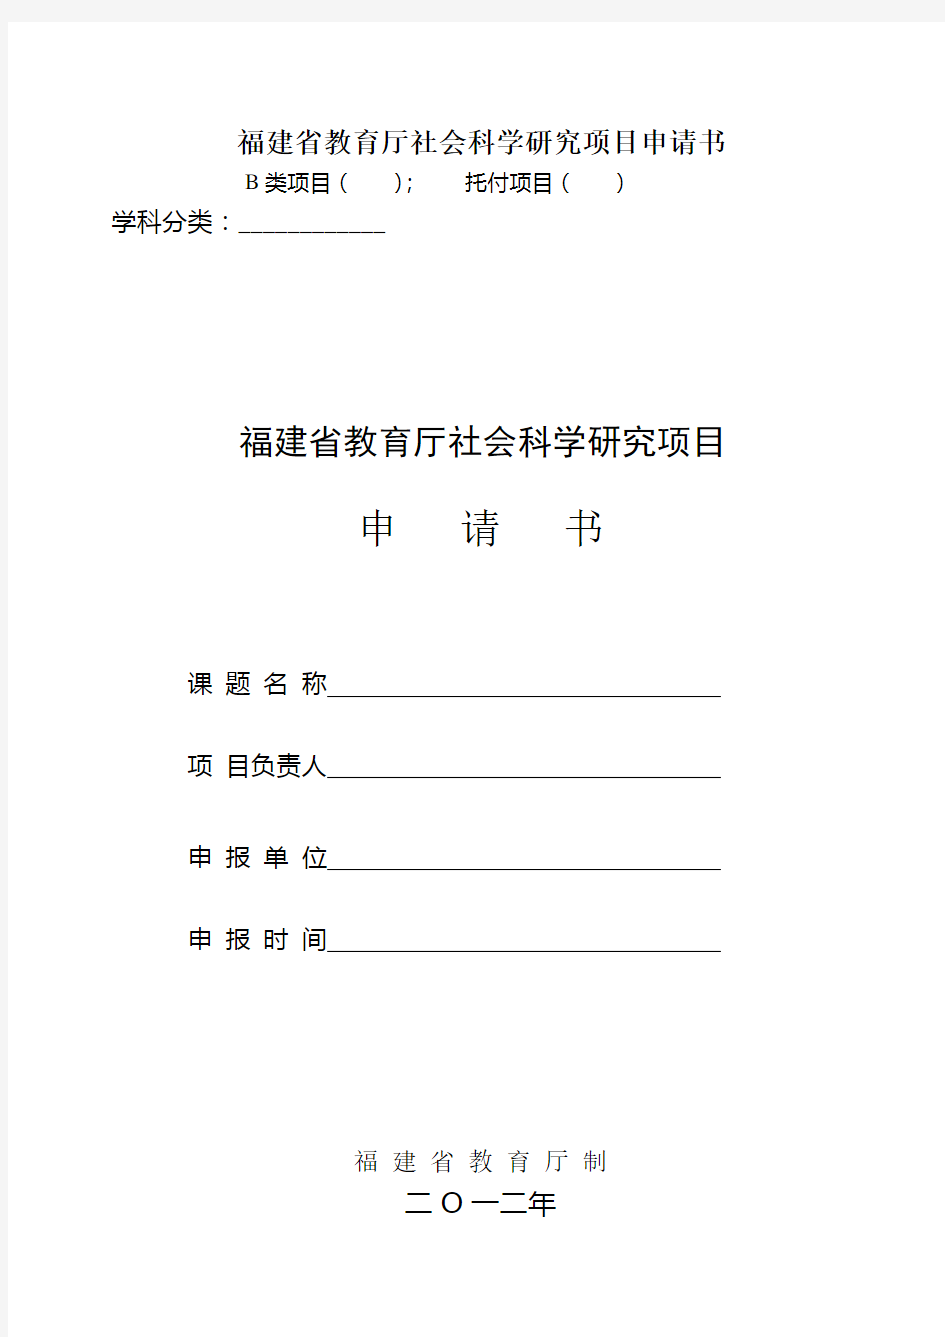 福建省教育厅社会科学研究项目申请书